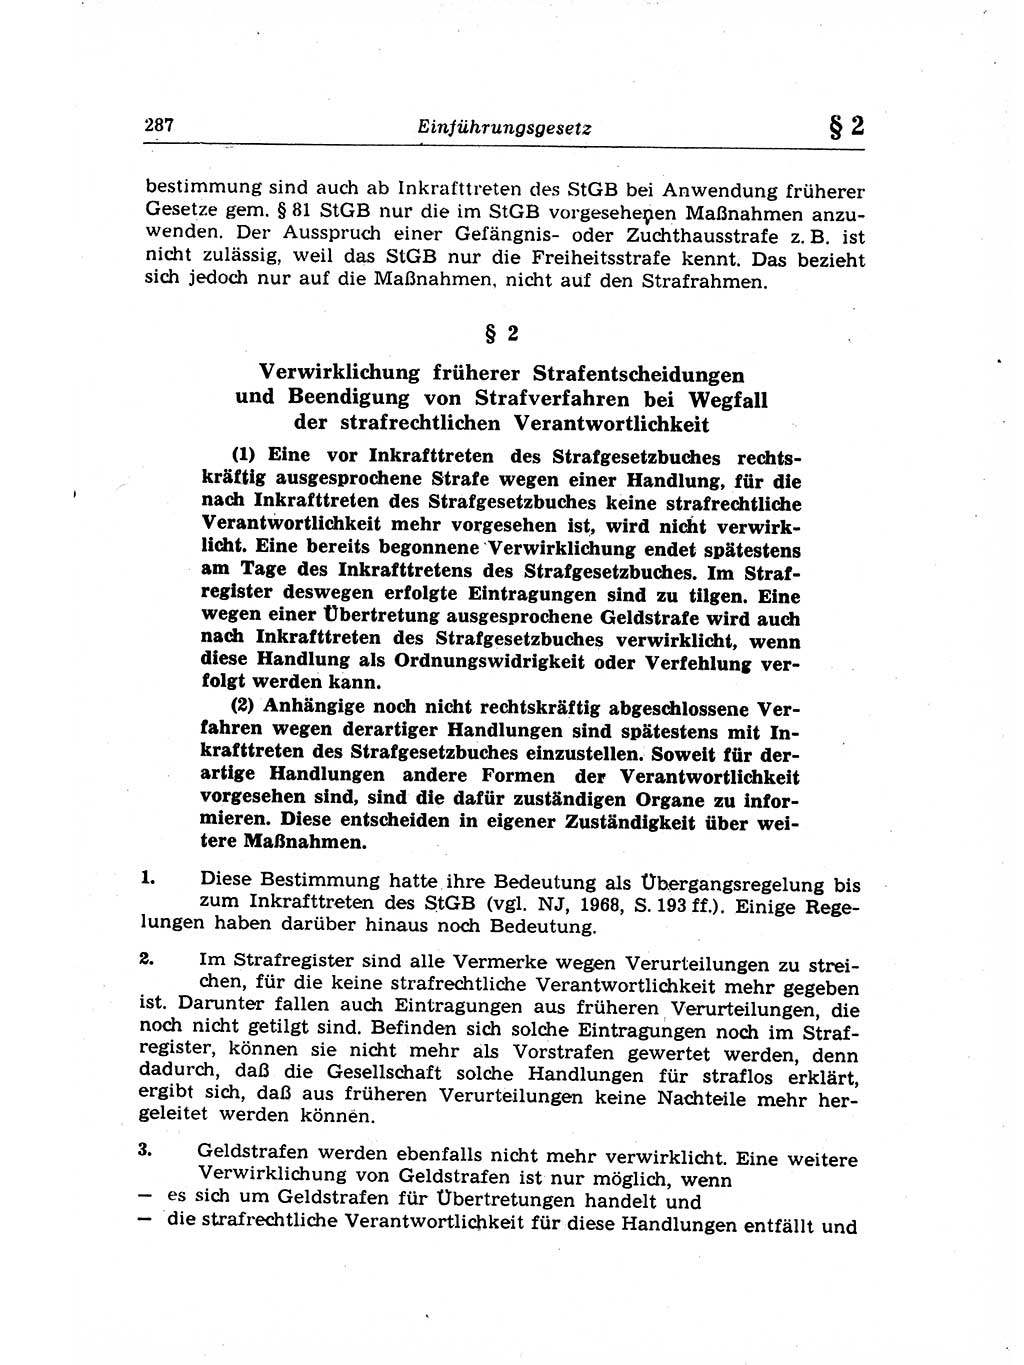 Strafrecht der Deutschen Demokratischen Republik (DDR), Lehrkommentar zum Strafgesetzbuch (StGB), Allgemeiner Teil 1969, Seite 287 (Strafr. DDR Lehrkomm. StGB AT 1969, S. 287)